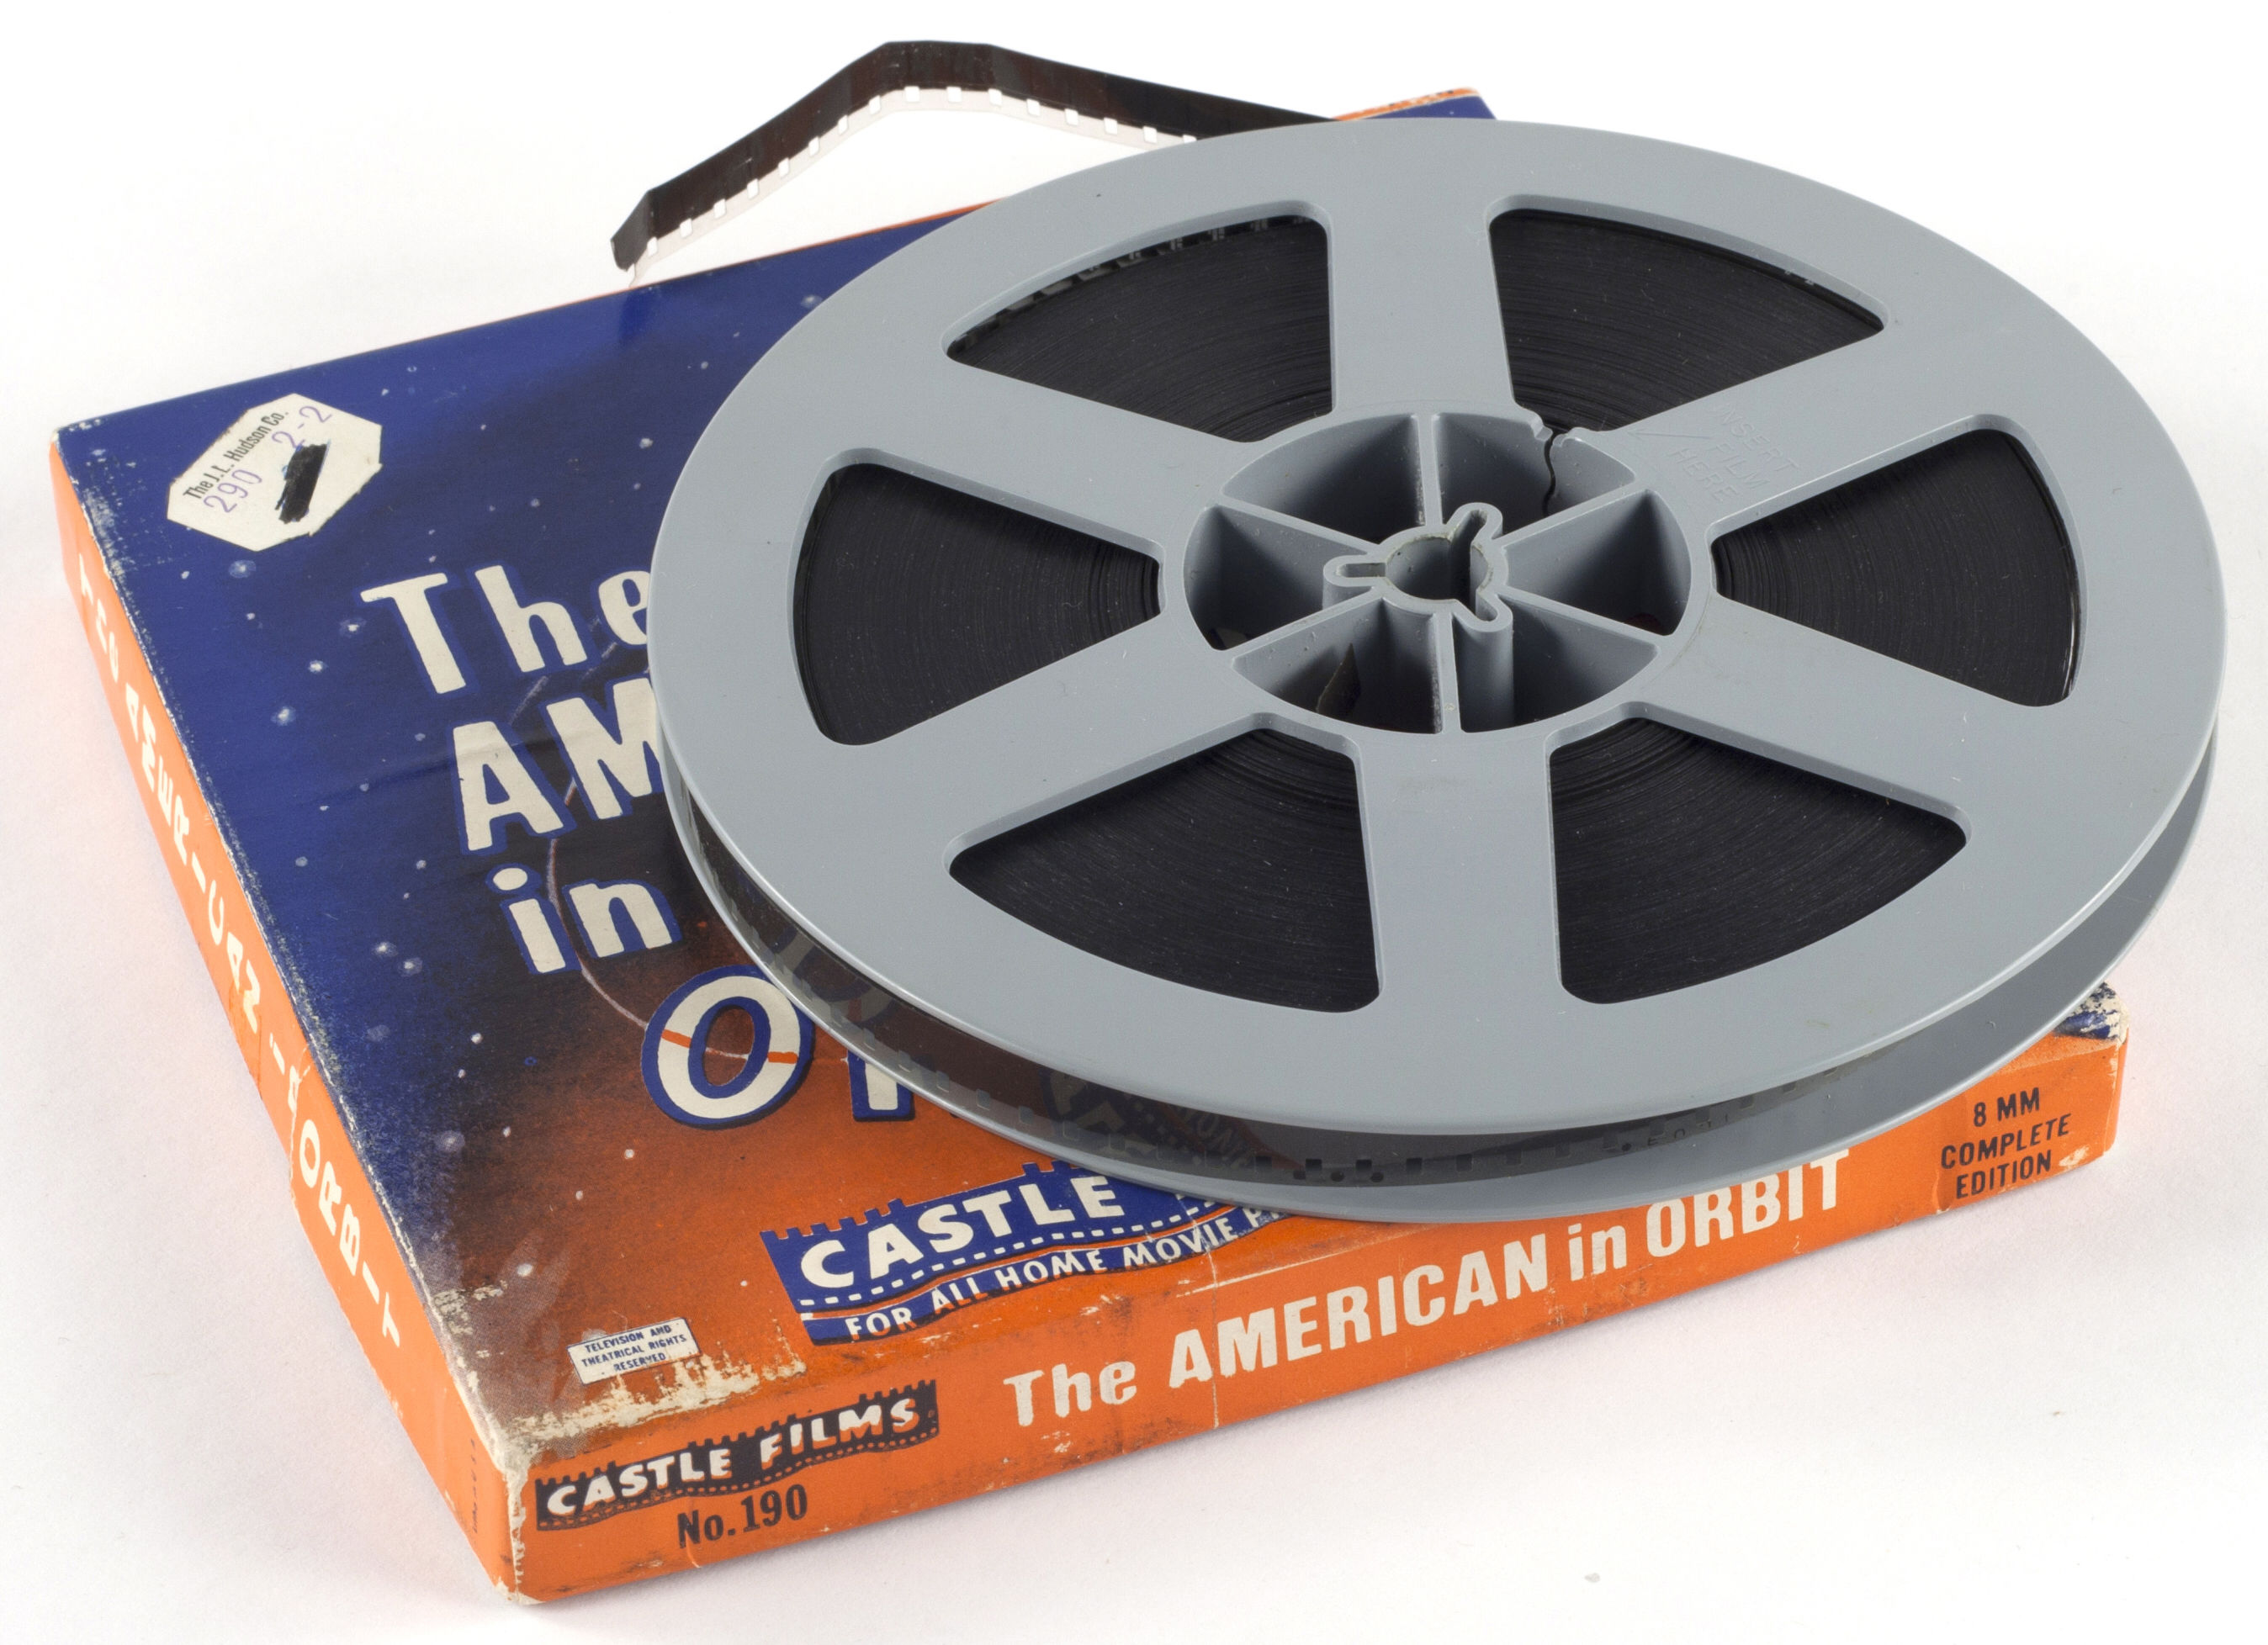 Spool & case Standard 8mm 8mm 50ft Cine Film 3 inch Black Kodak Reel 